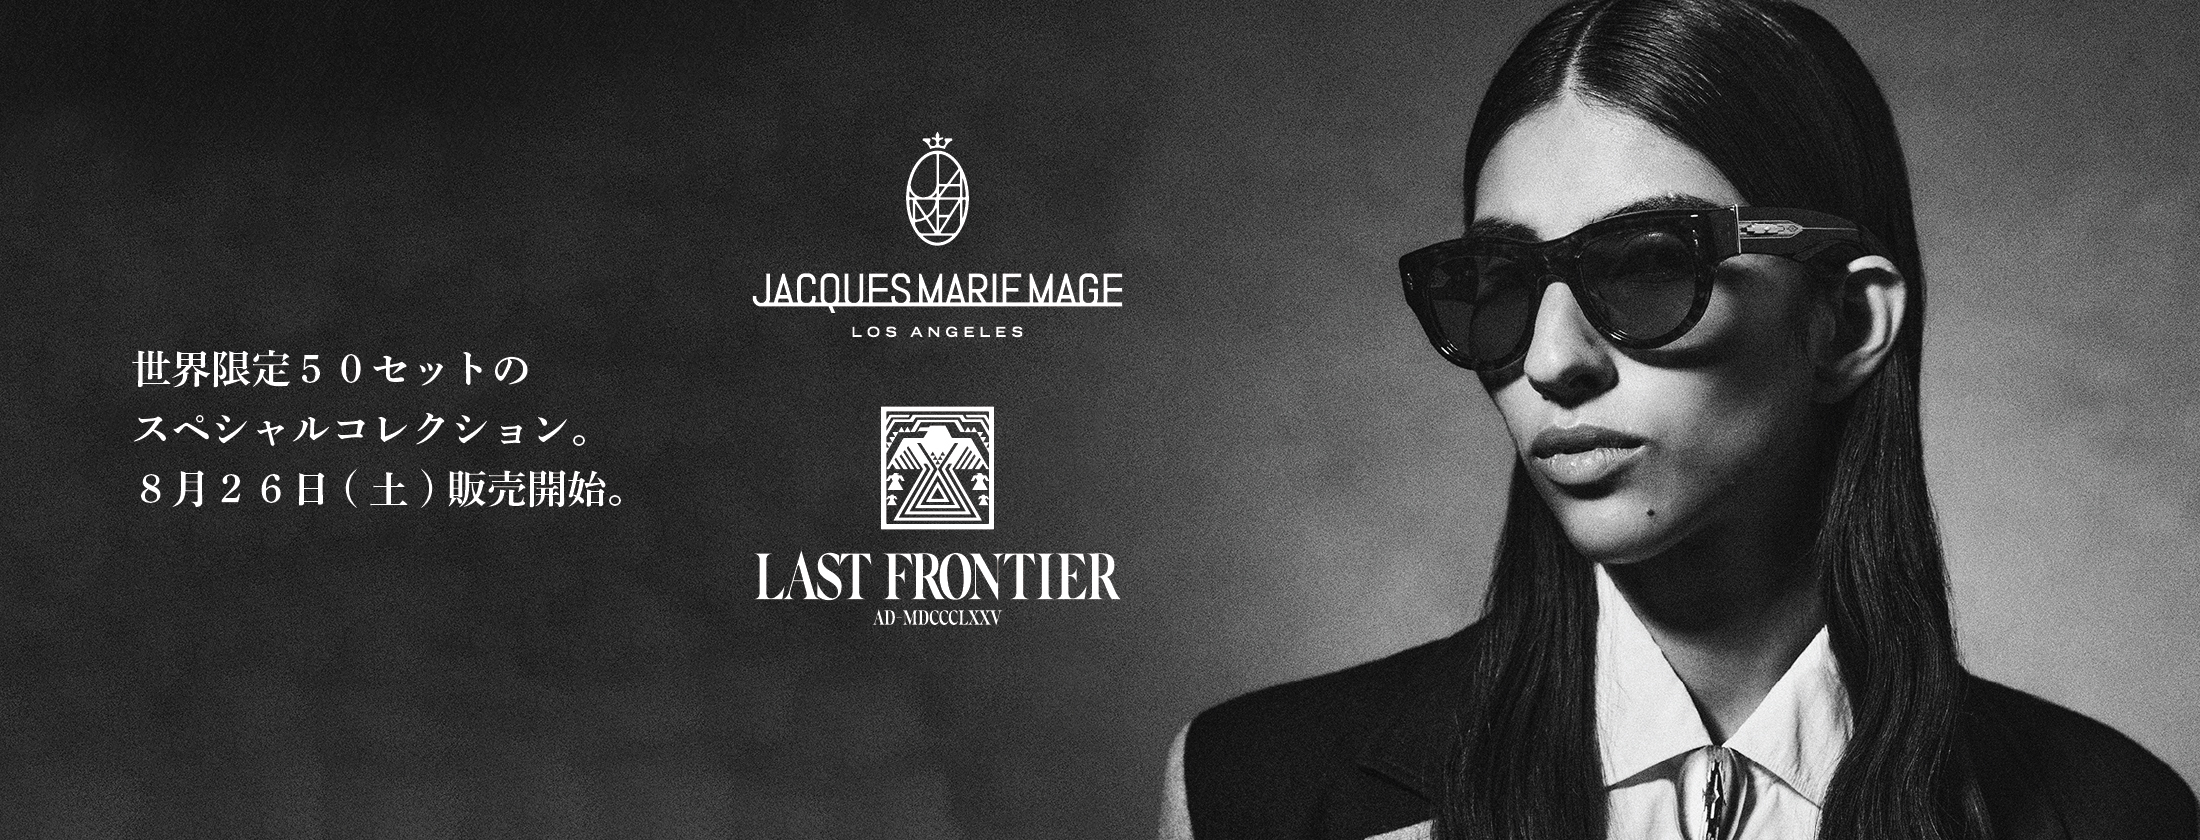 【緊急告知】JACQUES MARIE MAGE “LAST FRONTIER Ⅳ” 本日発売開始